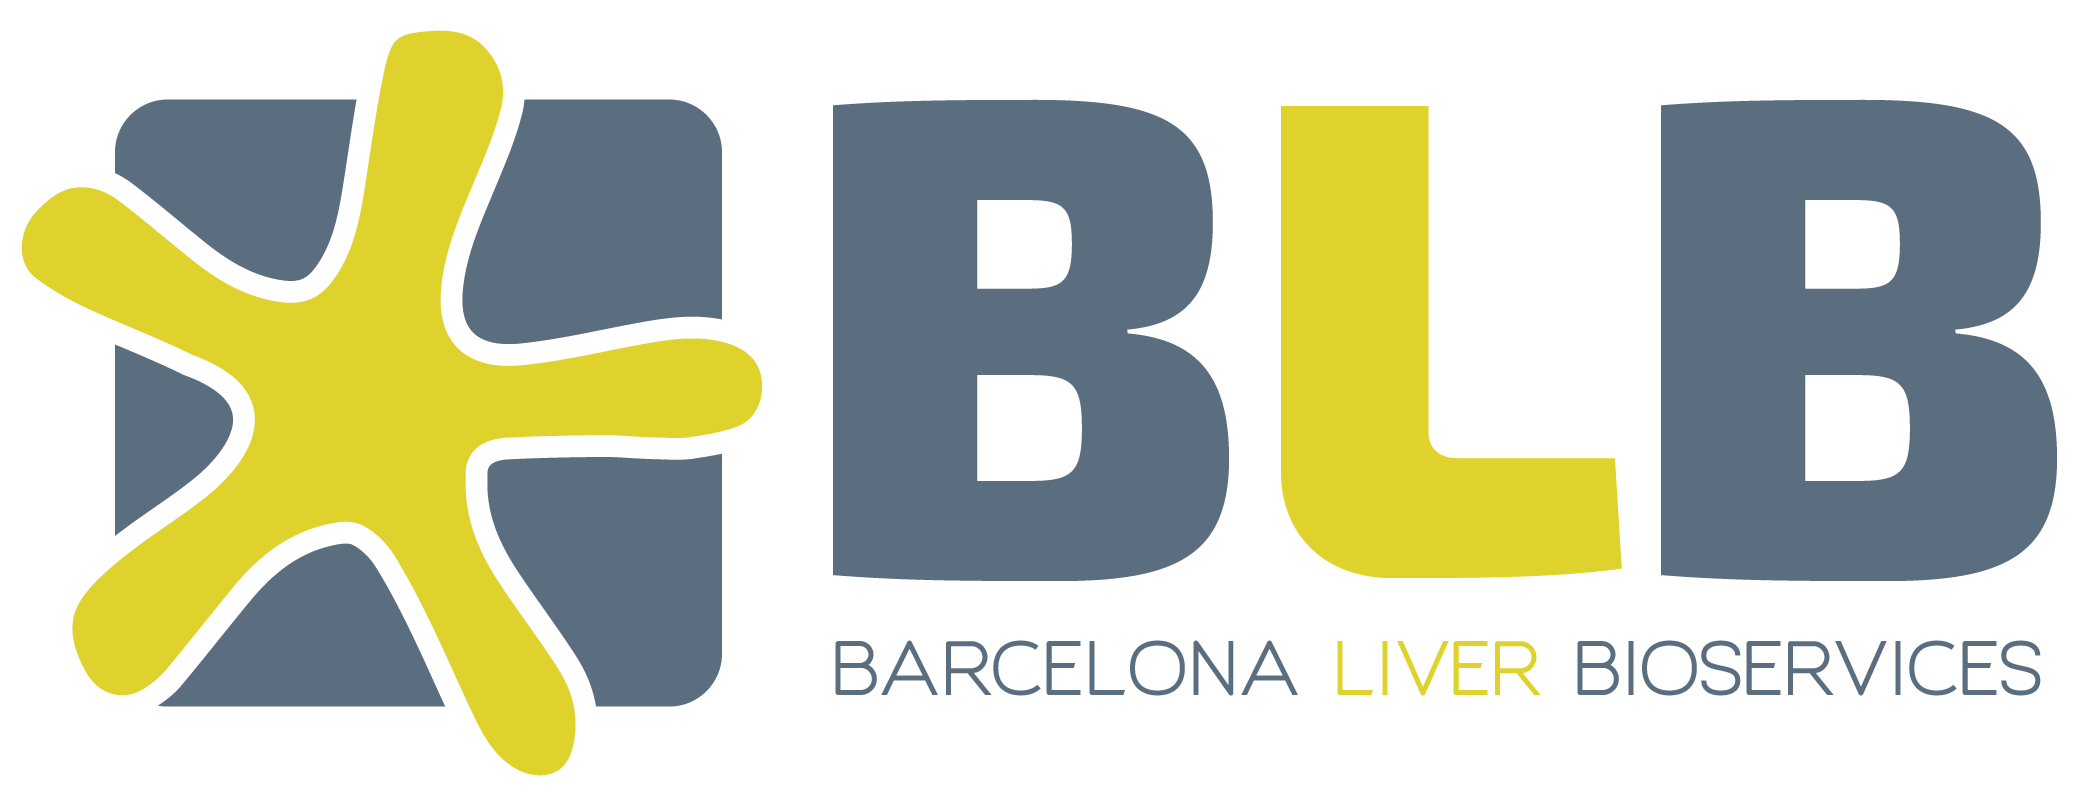 Barcelona Liver Bioservices SL